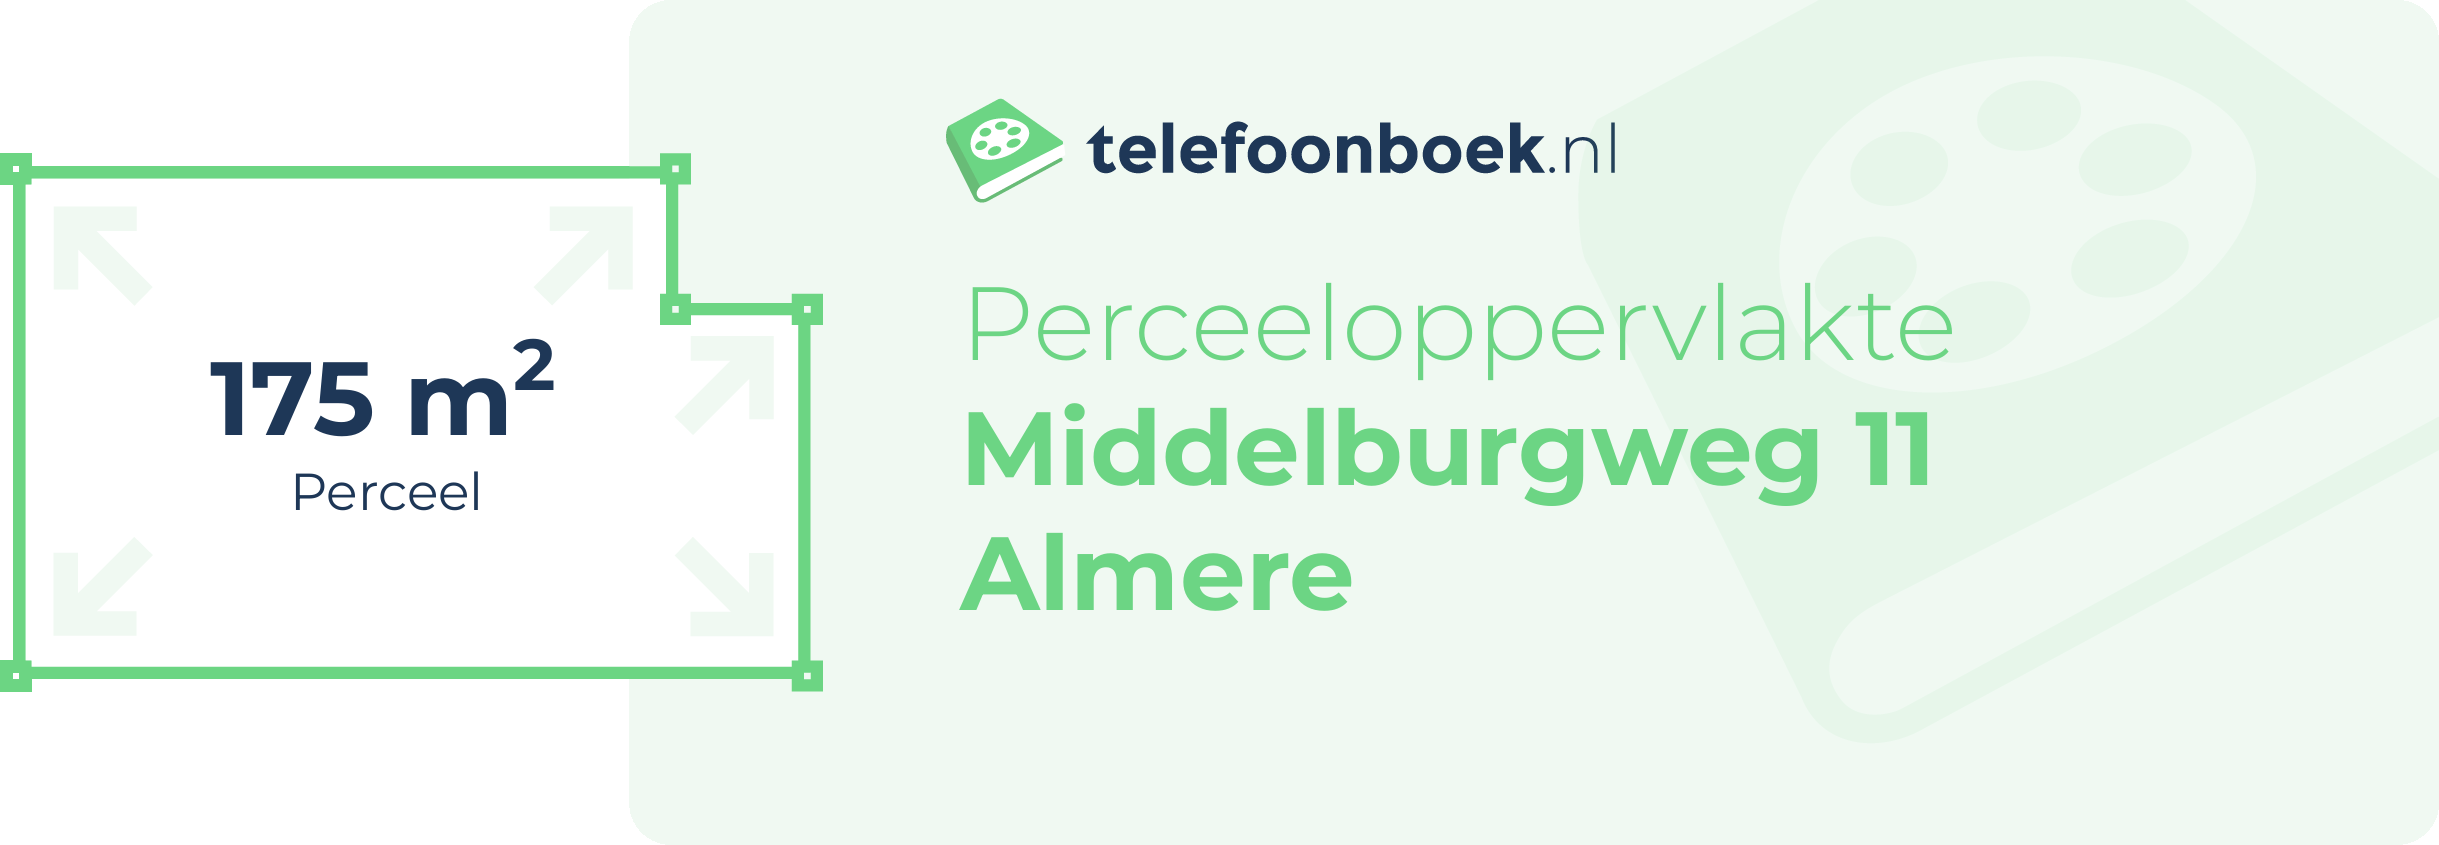 Perceeloppervlakte Middelburgweg 11 Almere